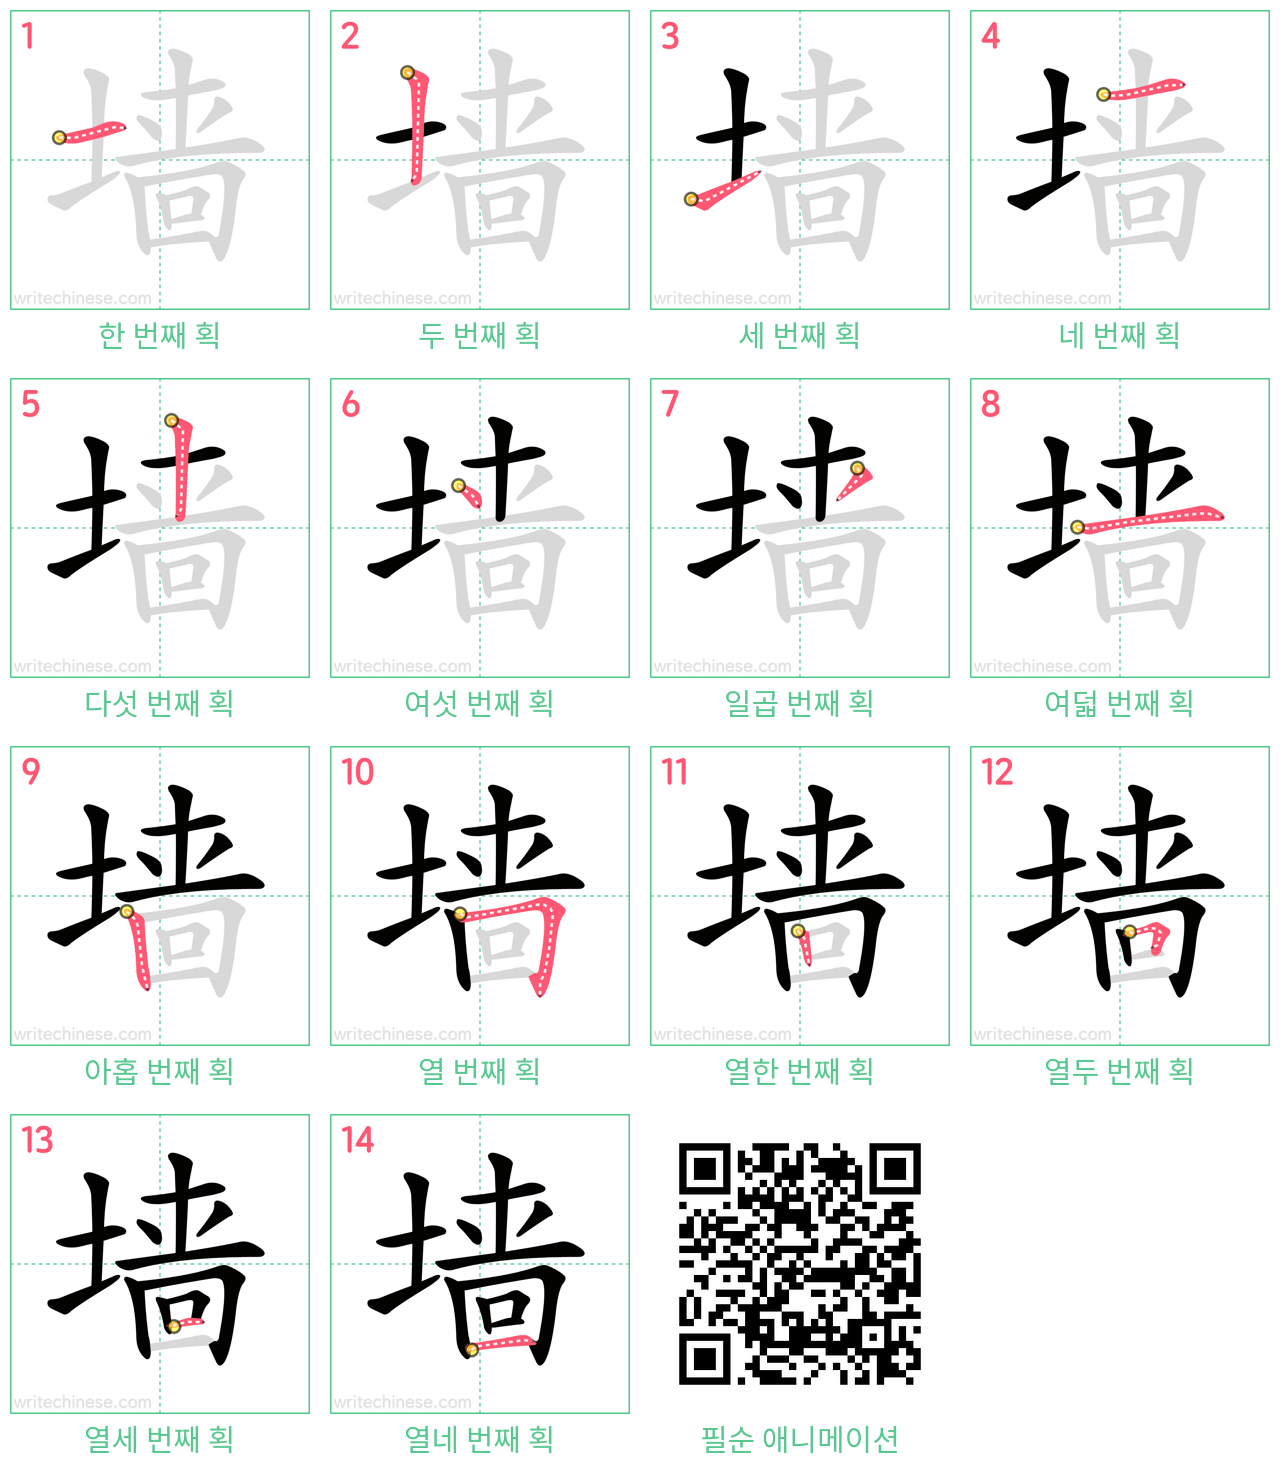 墙 step-by-step stroke order diagrams